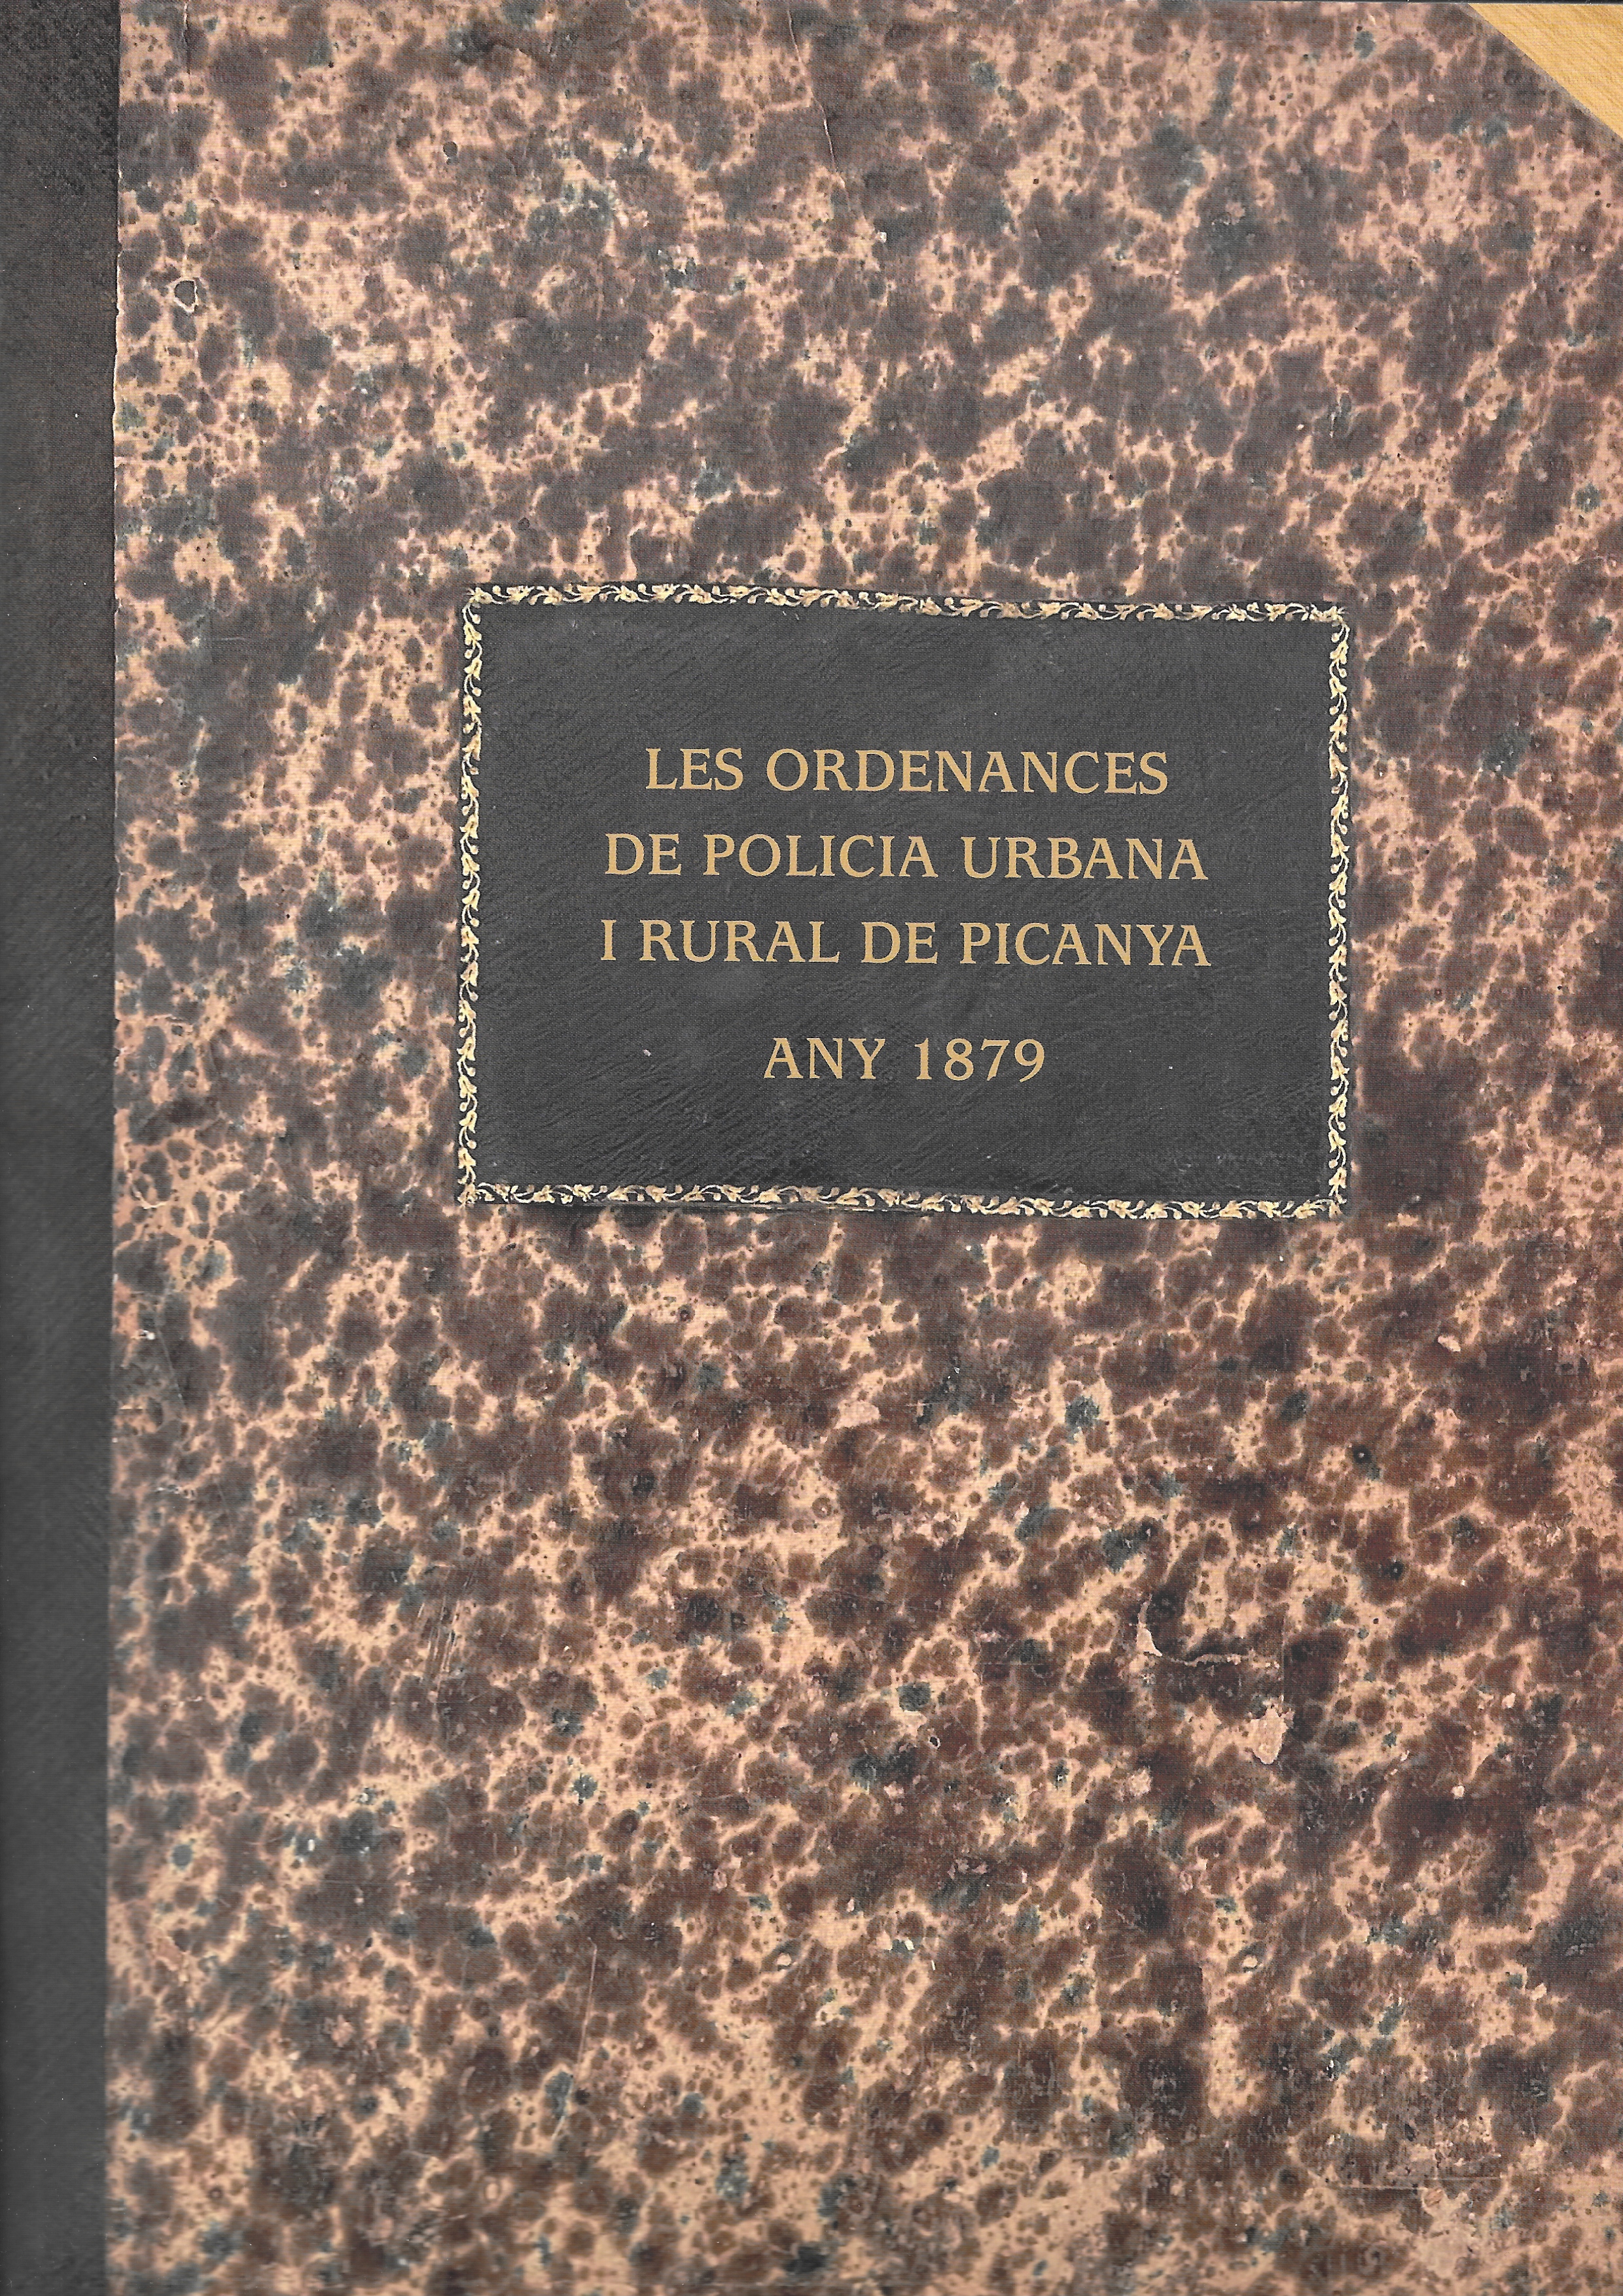 Les Ordenances de Policia Urbana i Rural de Picanya. Any 1879